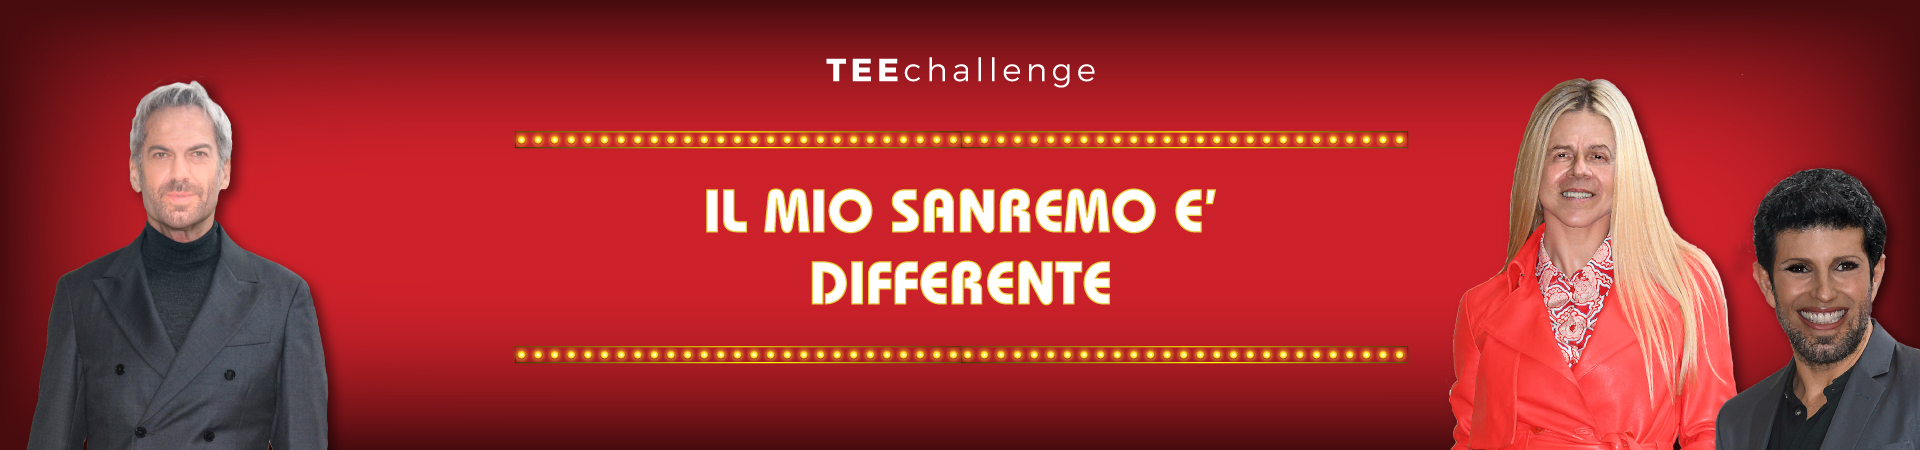 Teechallenge IL MIO SANREMO E' DIFFERENTE Banner Desktop